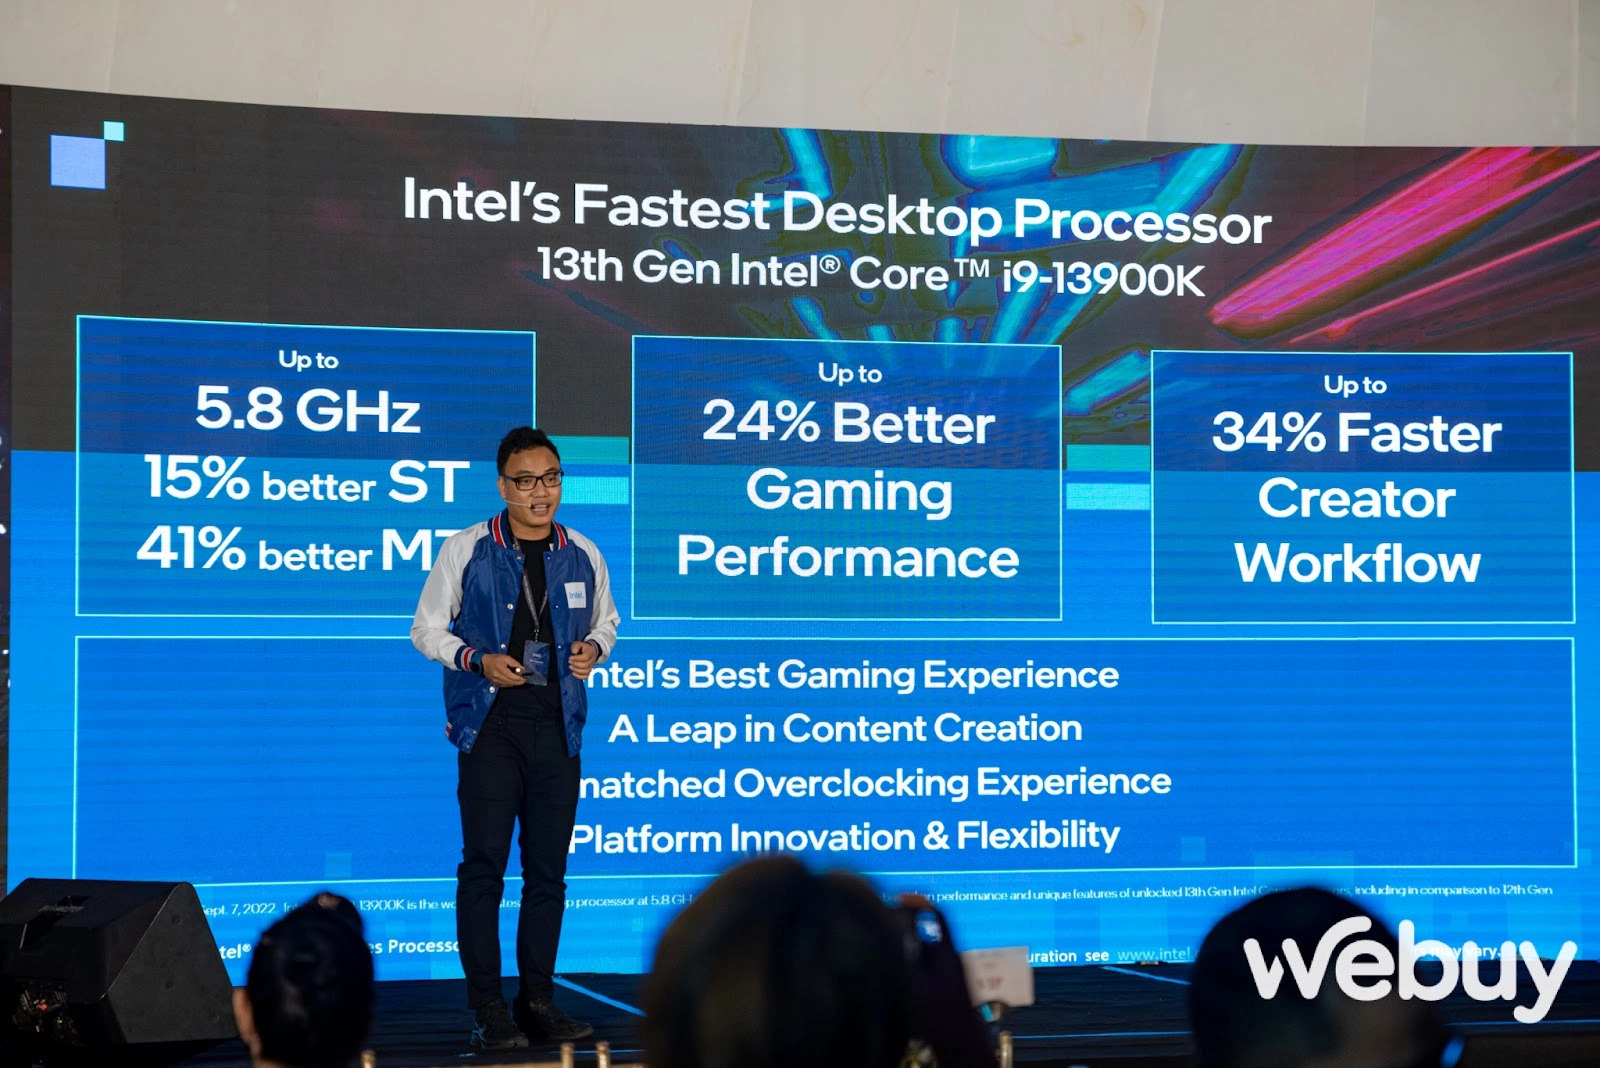 Intel Core thế hệ thứ 13 chính thức ra mắt, tăng cường hiệu năng hướng tới đối tượng game thủ, người làm nội dung